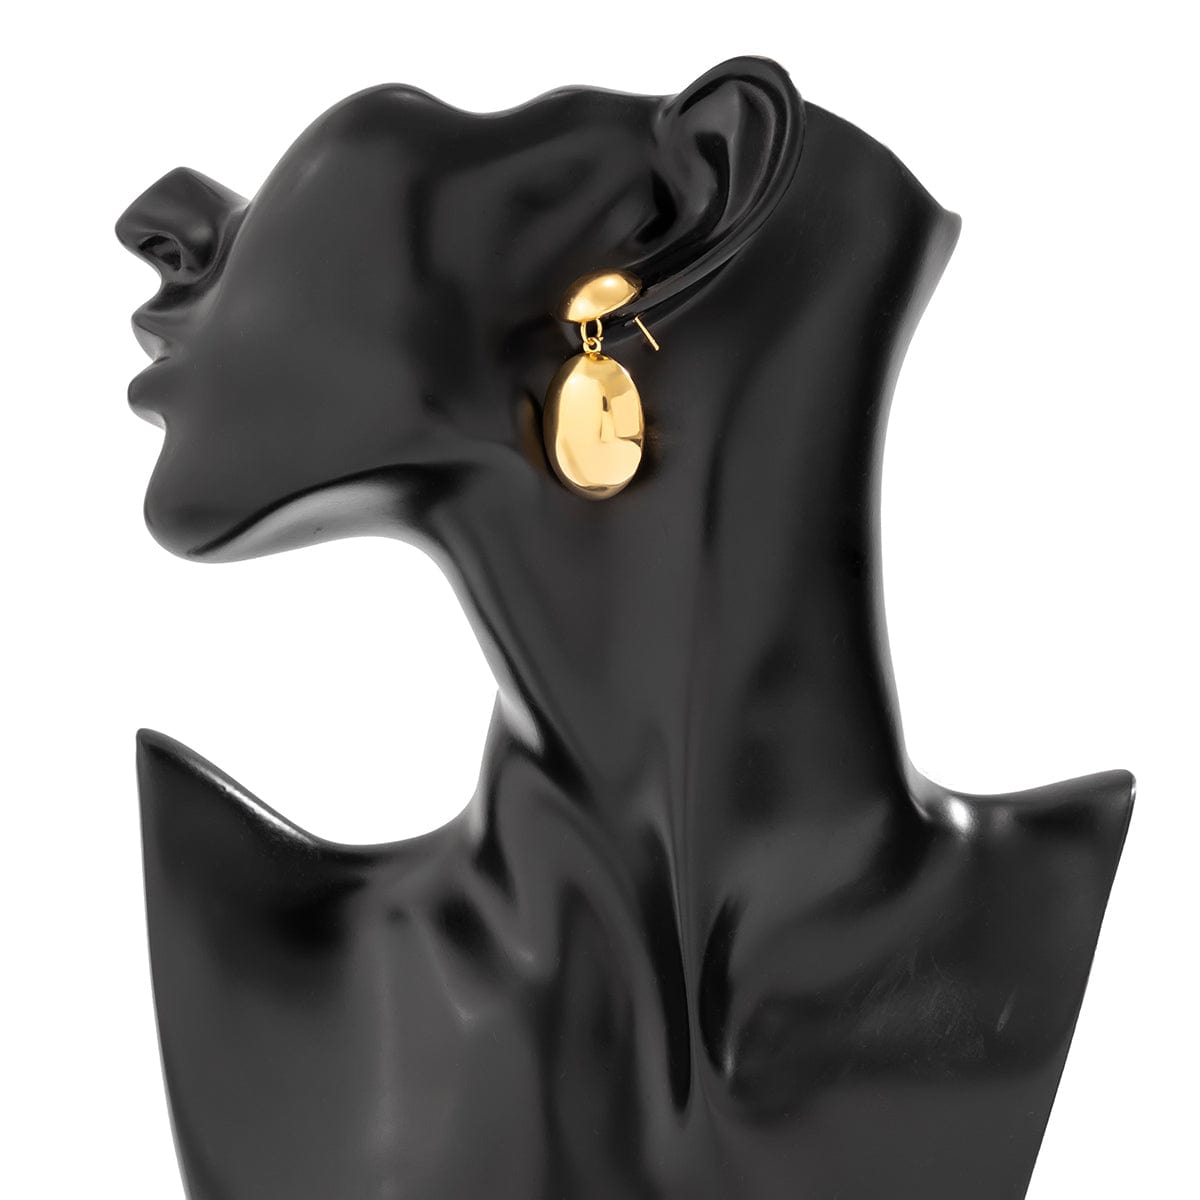 Geometric Gold Silver Plated Oval Dangle Earrings - ArtGalleryZen